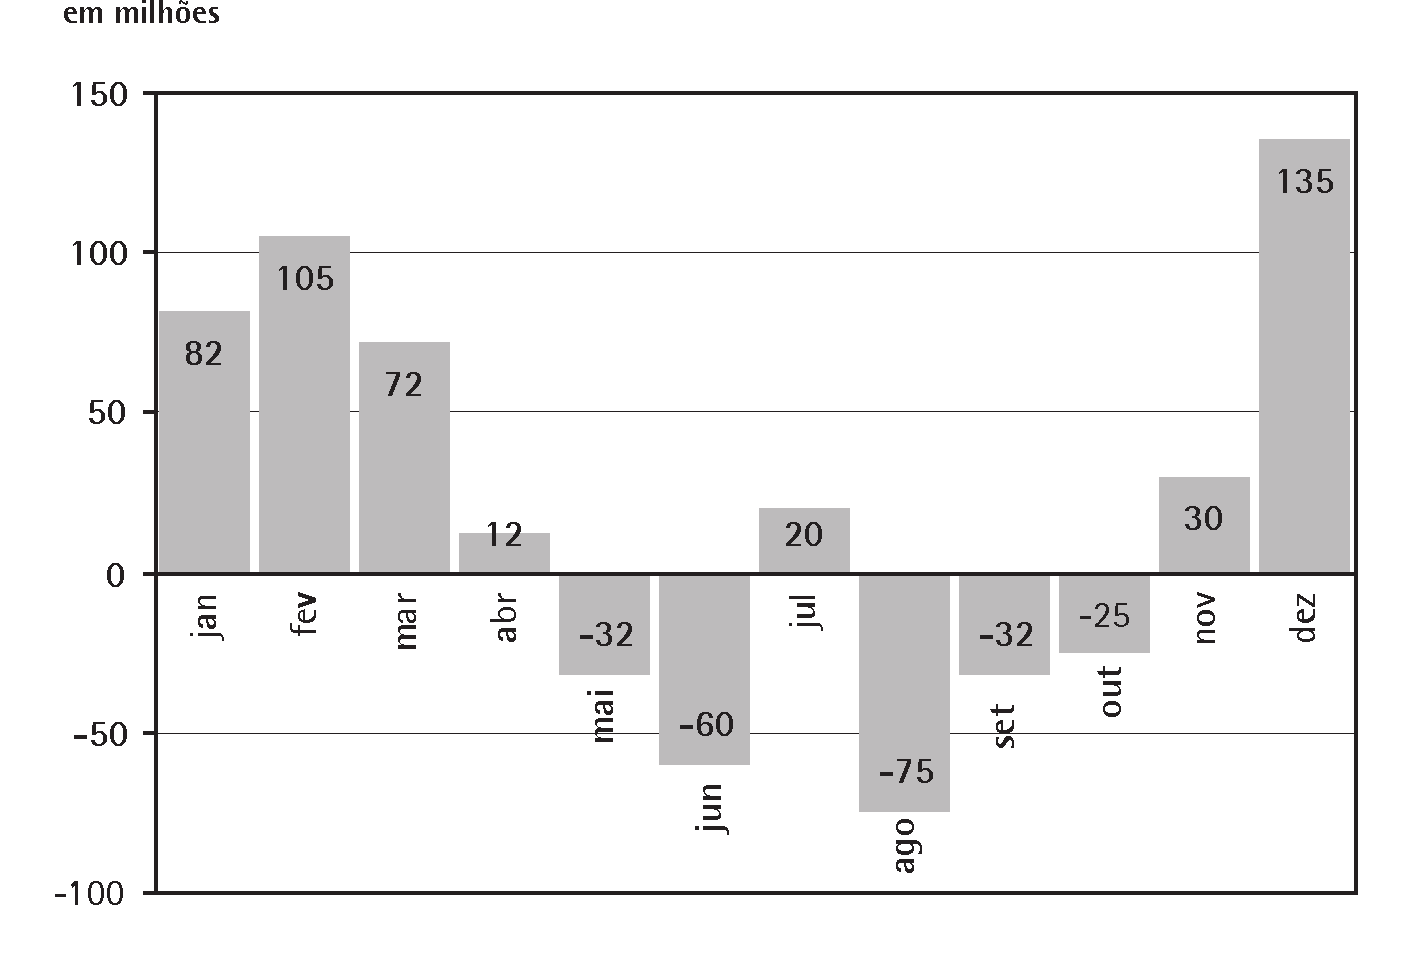 Matemática e suas Tecnologias Ensino Médio 11 Desenvolvendo competências De acordo com o gráfico da Figura 12, podemos afirmar que: a) a maior variação do PIB da agropecuária foi de 3,23.